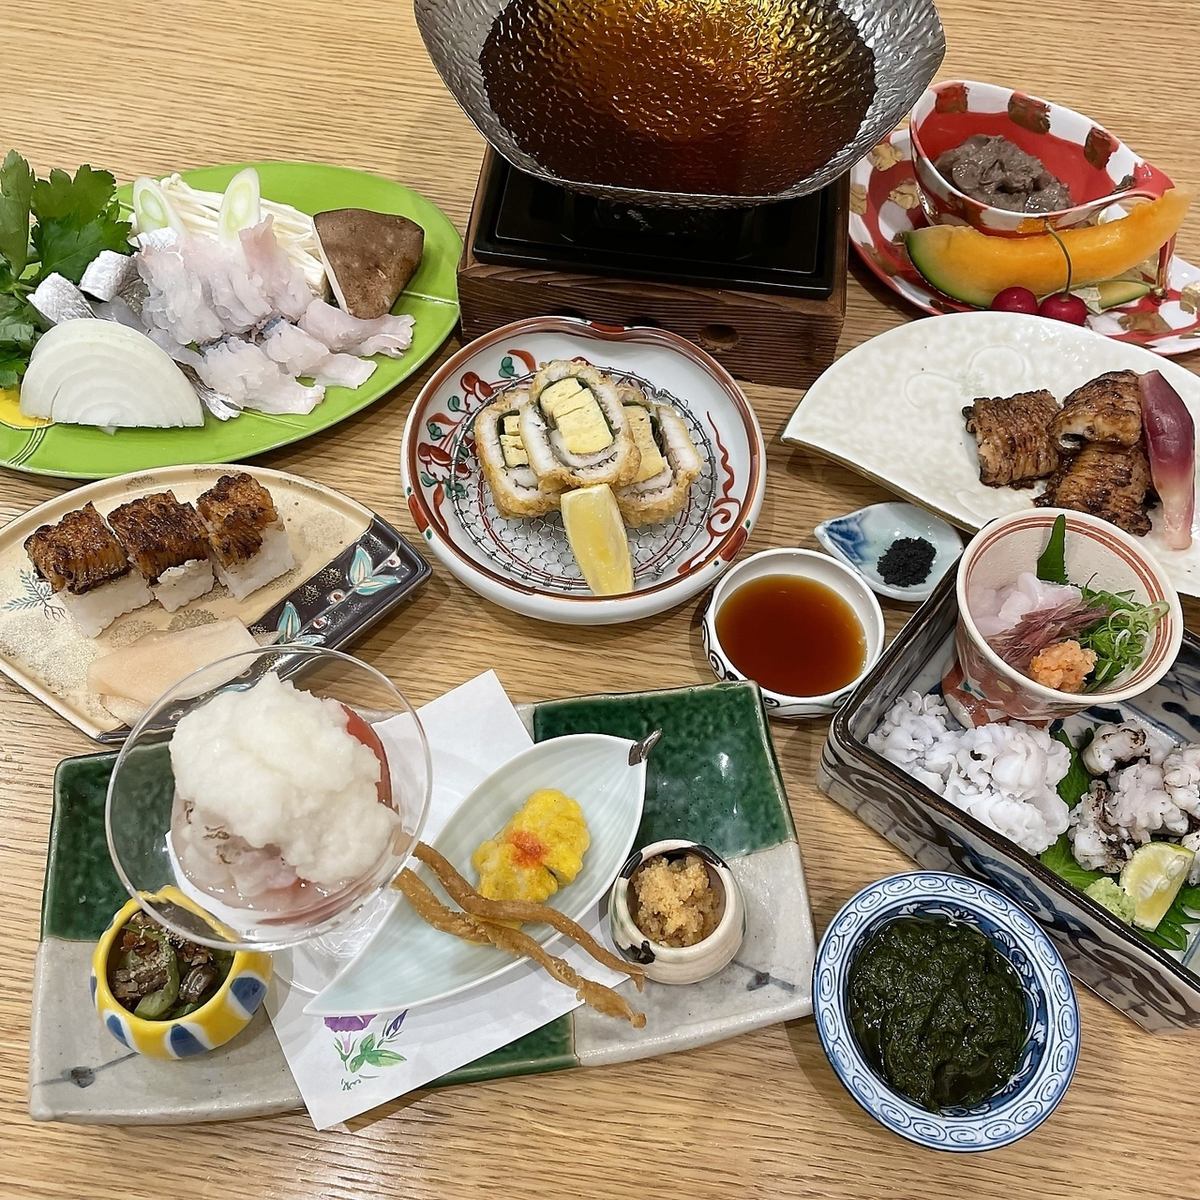 您可以享受禮貌和精緻的菜餚。精湛技藝閃耀的日式餐廳。